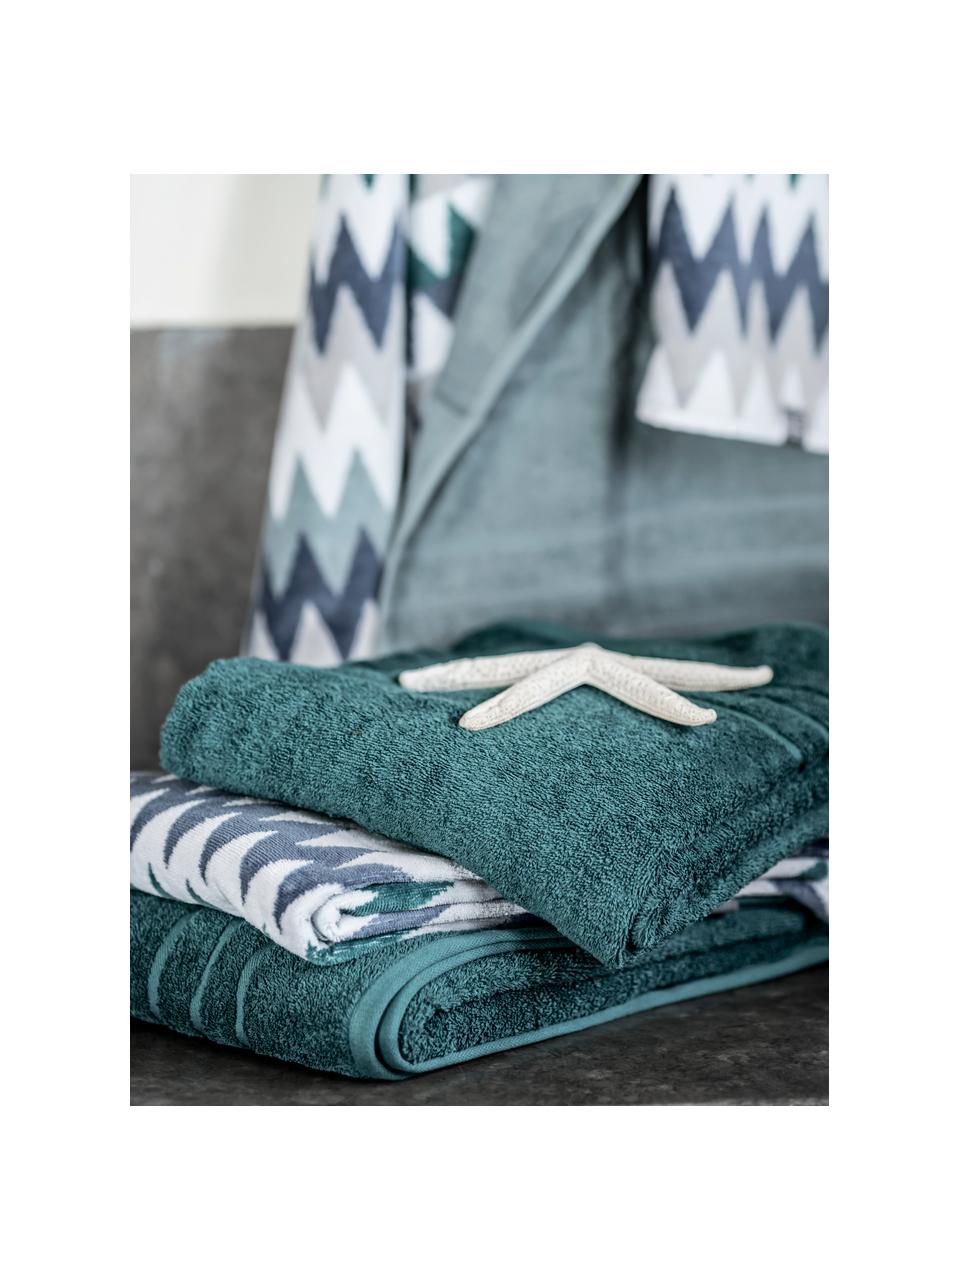 Handtuch Hanneke in verschiedenen Größen, mit Zickzack-Muster, 100% Baumwolle, Blau, Grau, Weiß, Grün, Gästehandtuch